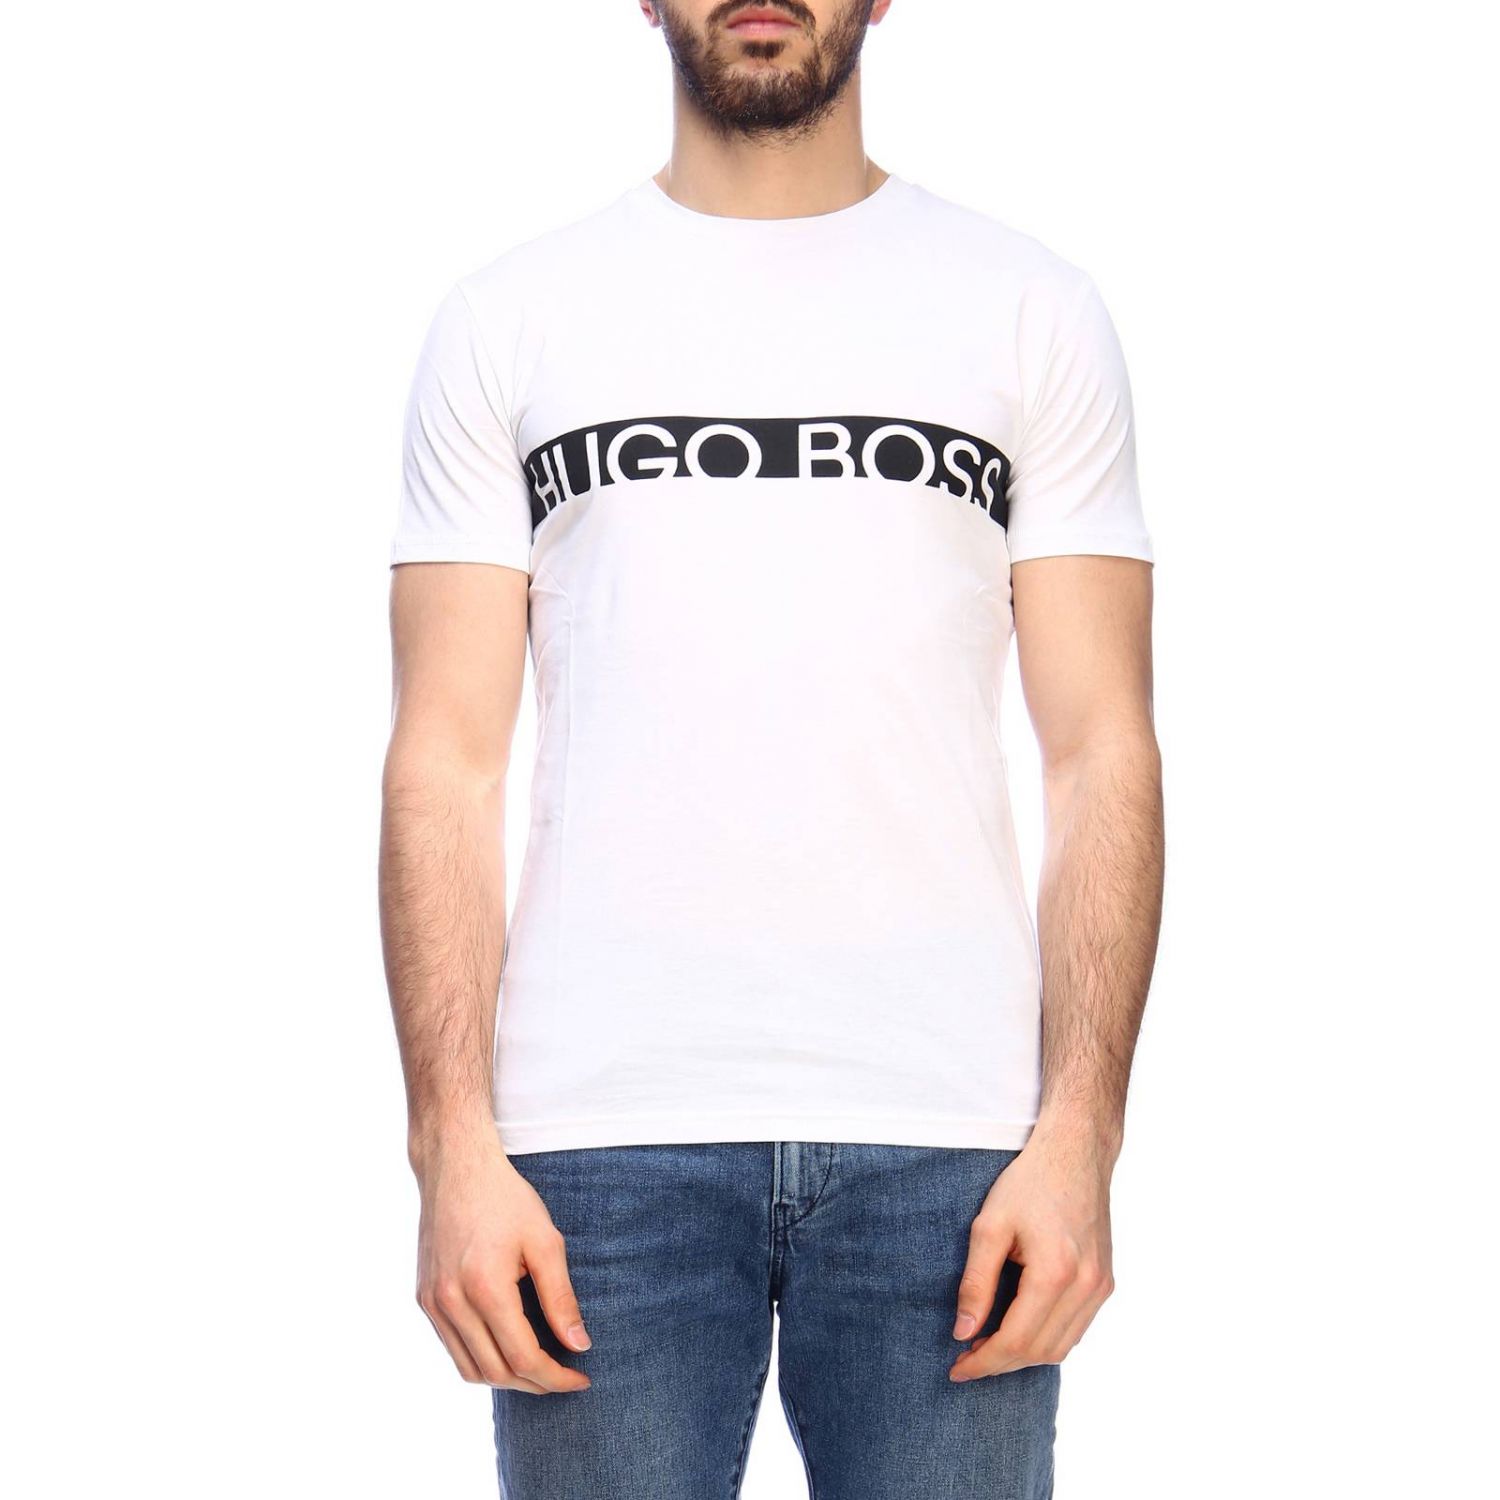 Hugo Boss Outlet: T-shirt men | T-Shirt Hugo Boss Men White | T-Shirt